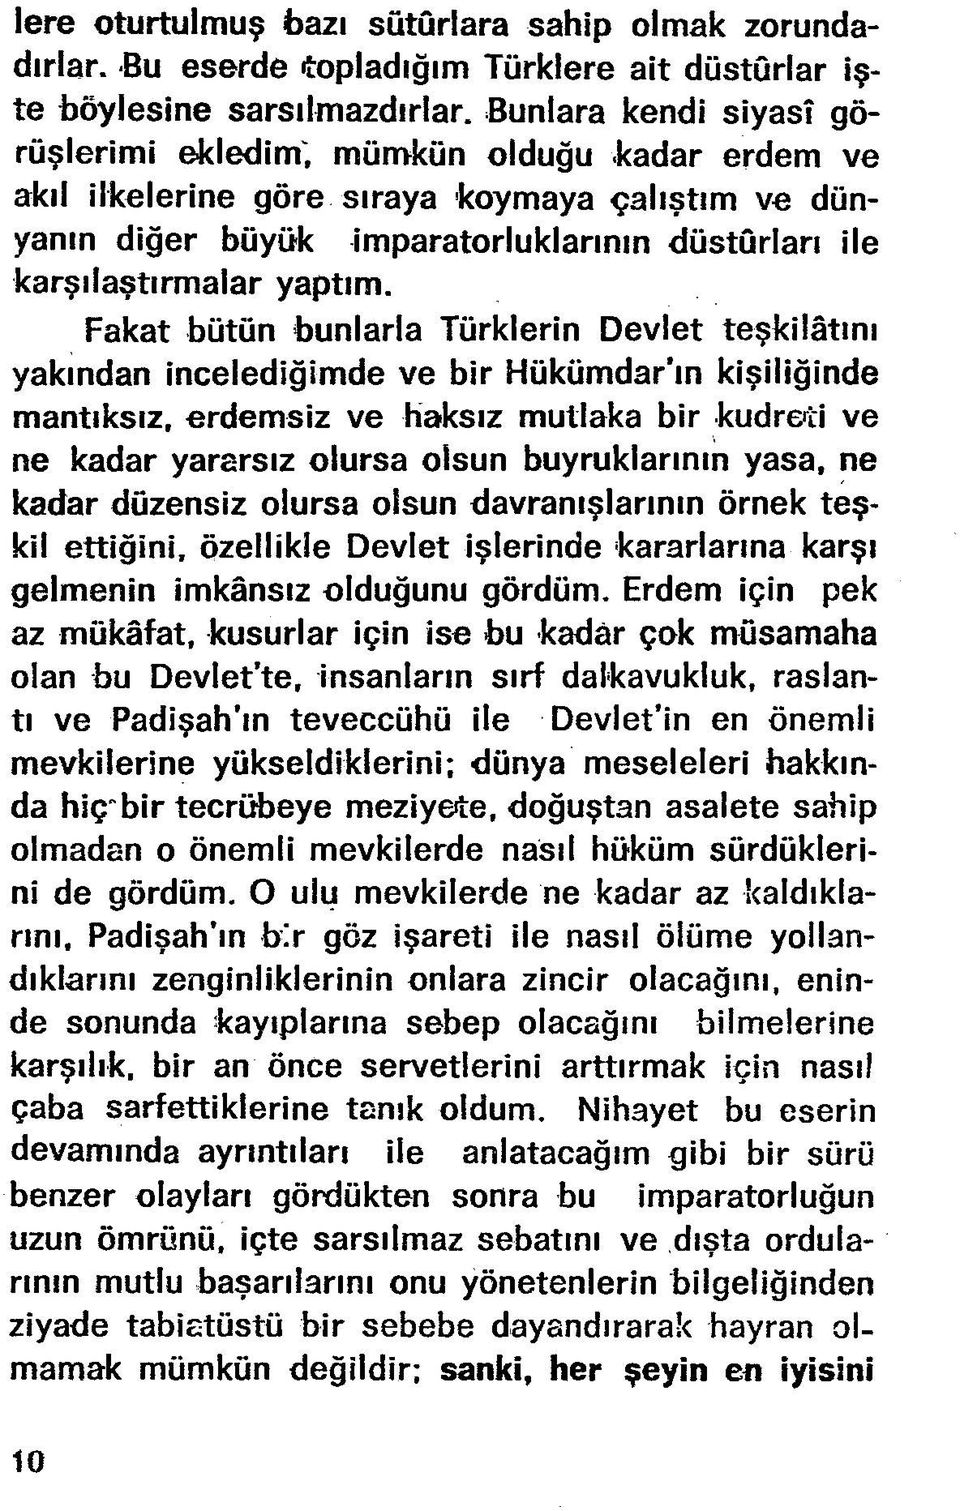 Fakat bütün bunlarla Türklerin Devlet teşkilâtını yakından incelediğimde ve bir Hükümdar ın kişiliğinde mantıksız, erdemsiz ve haksız mutlaka bir kudreti ve ne kadar yararsız olursa olsun